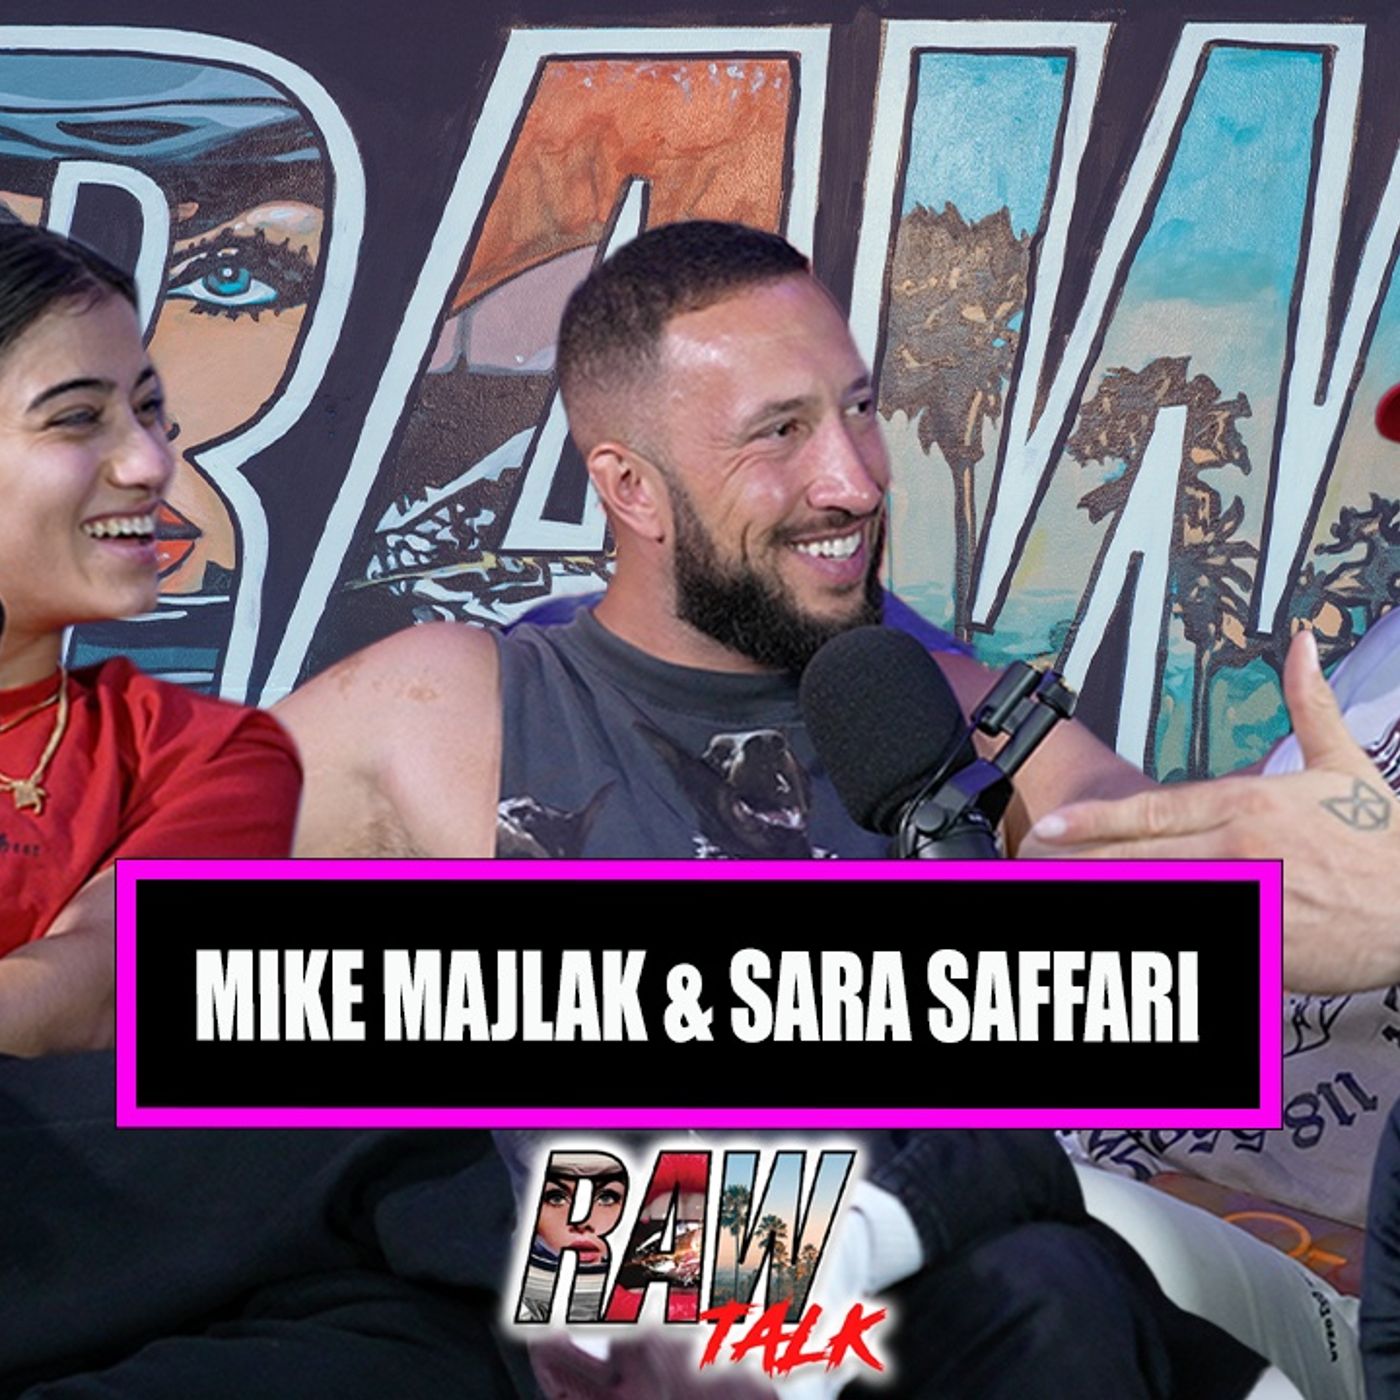 Mike Majlak On Logan Paul Lawsuit, Responding to SNEAKO & Sara Saffari